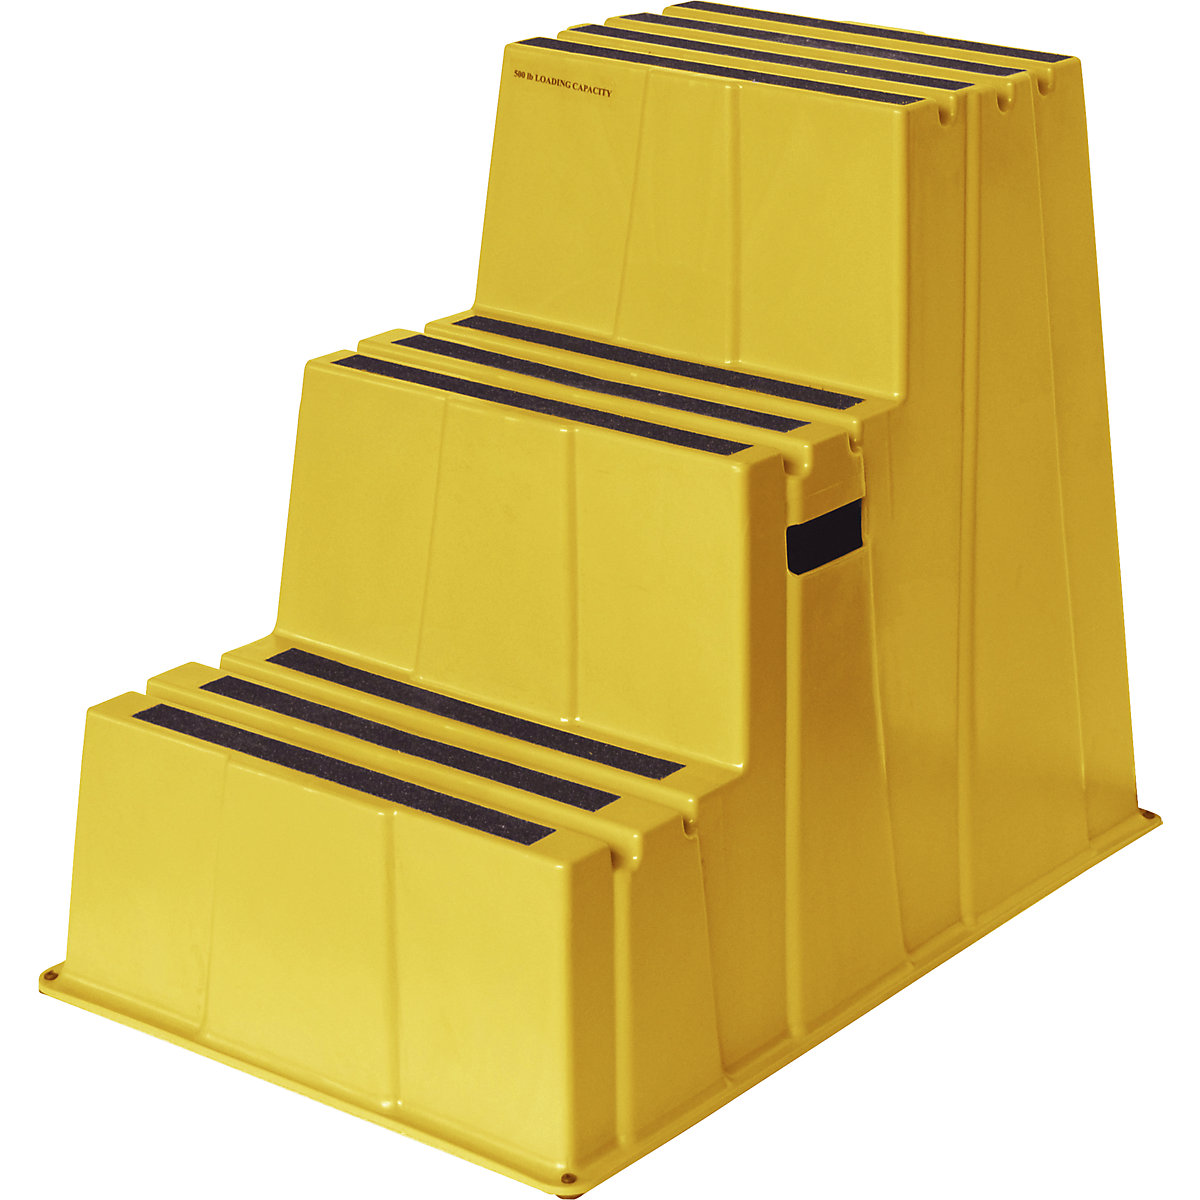 Scară din plastic cu trepte antiderapante – Twinco, capacitate portantă 150 kg, 3 trepte, galben-5